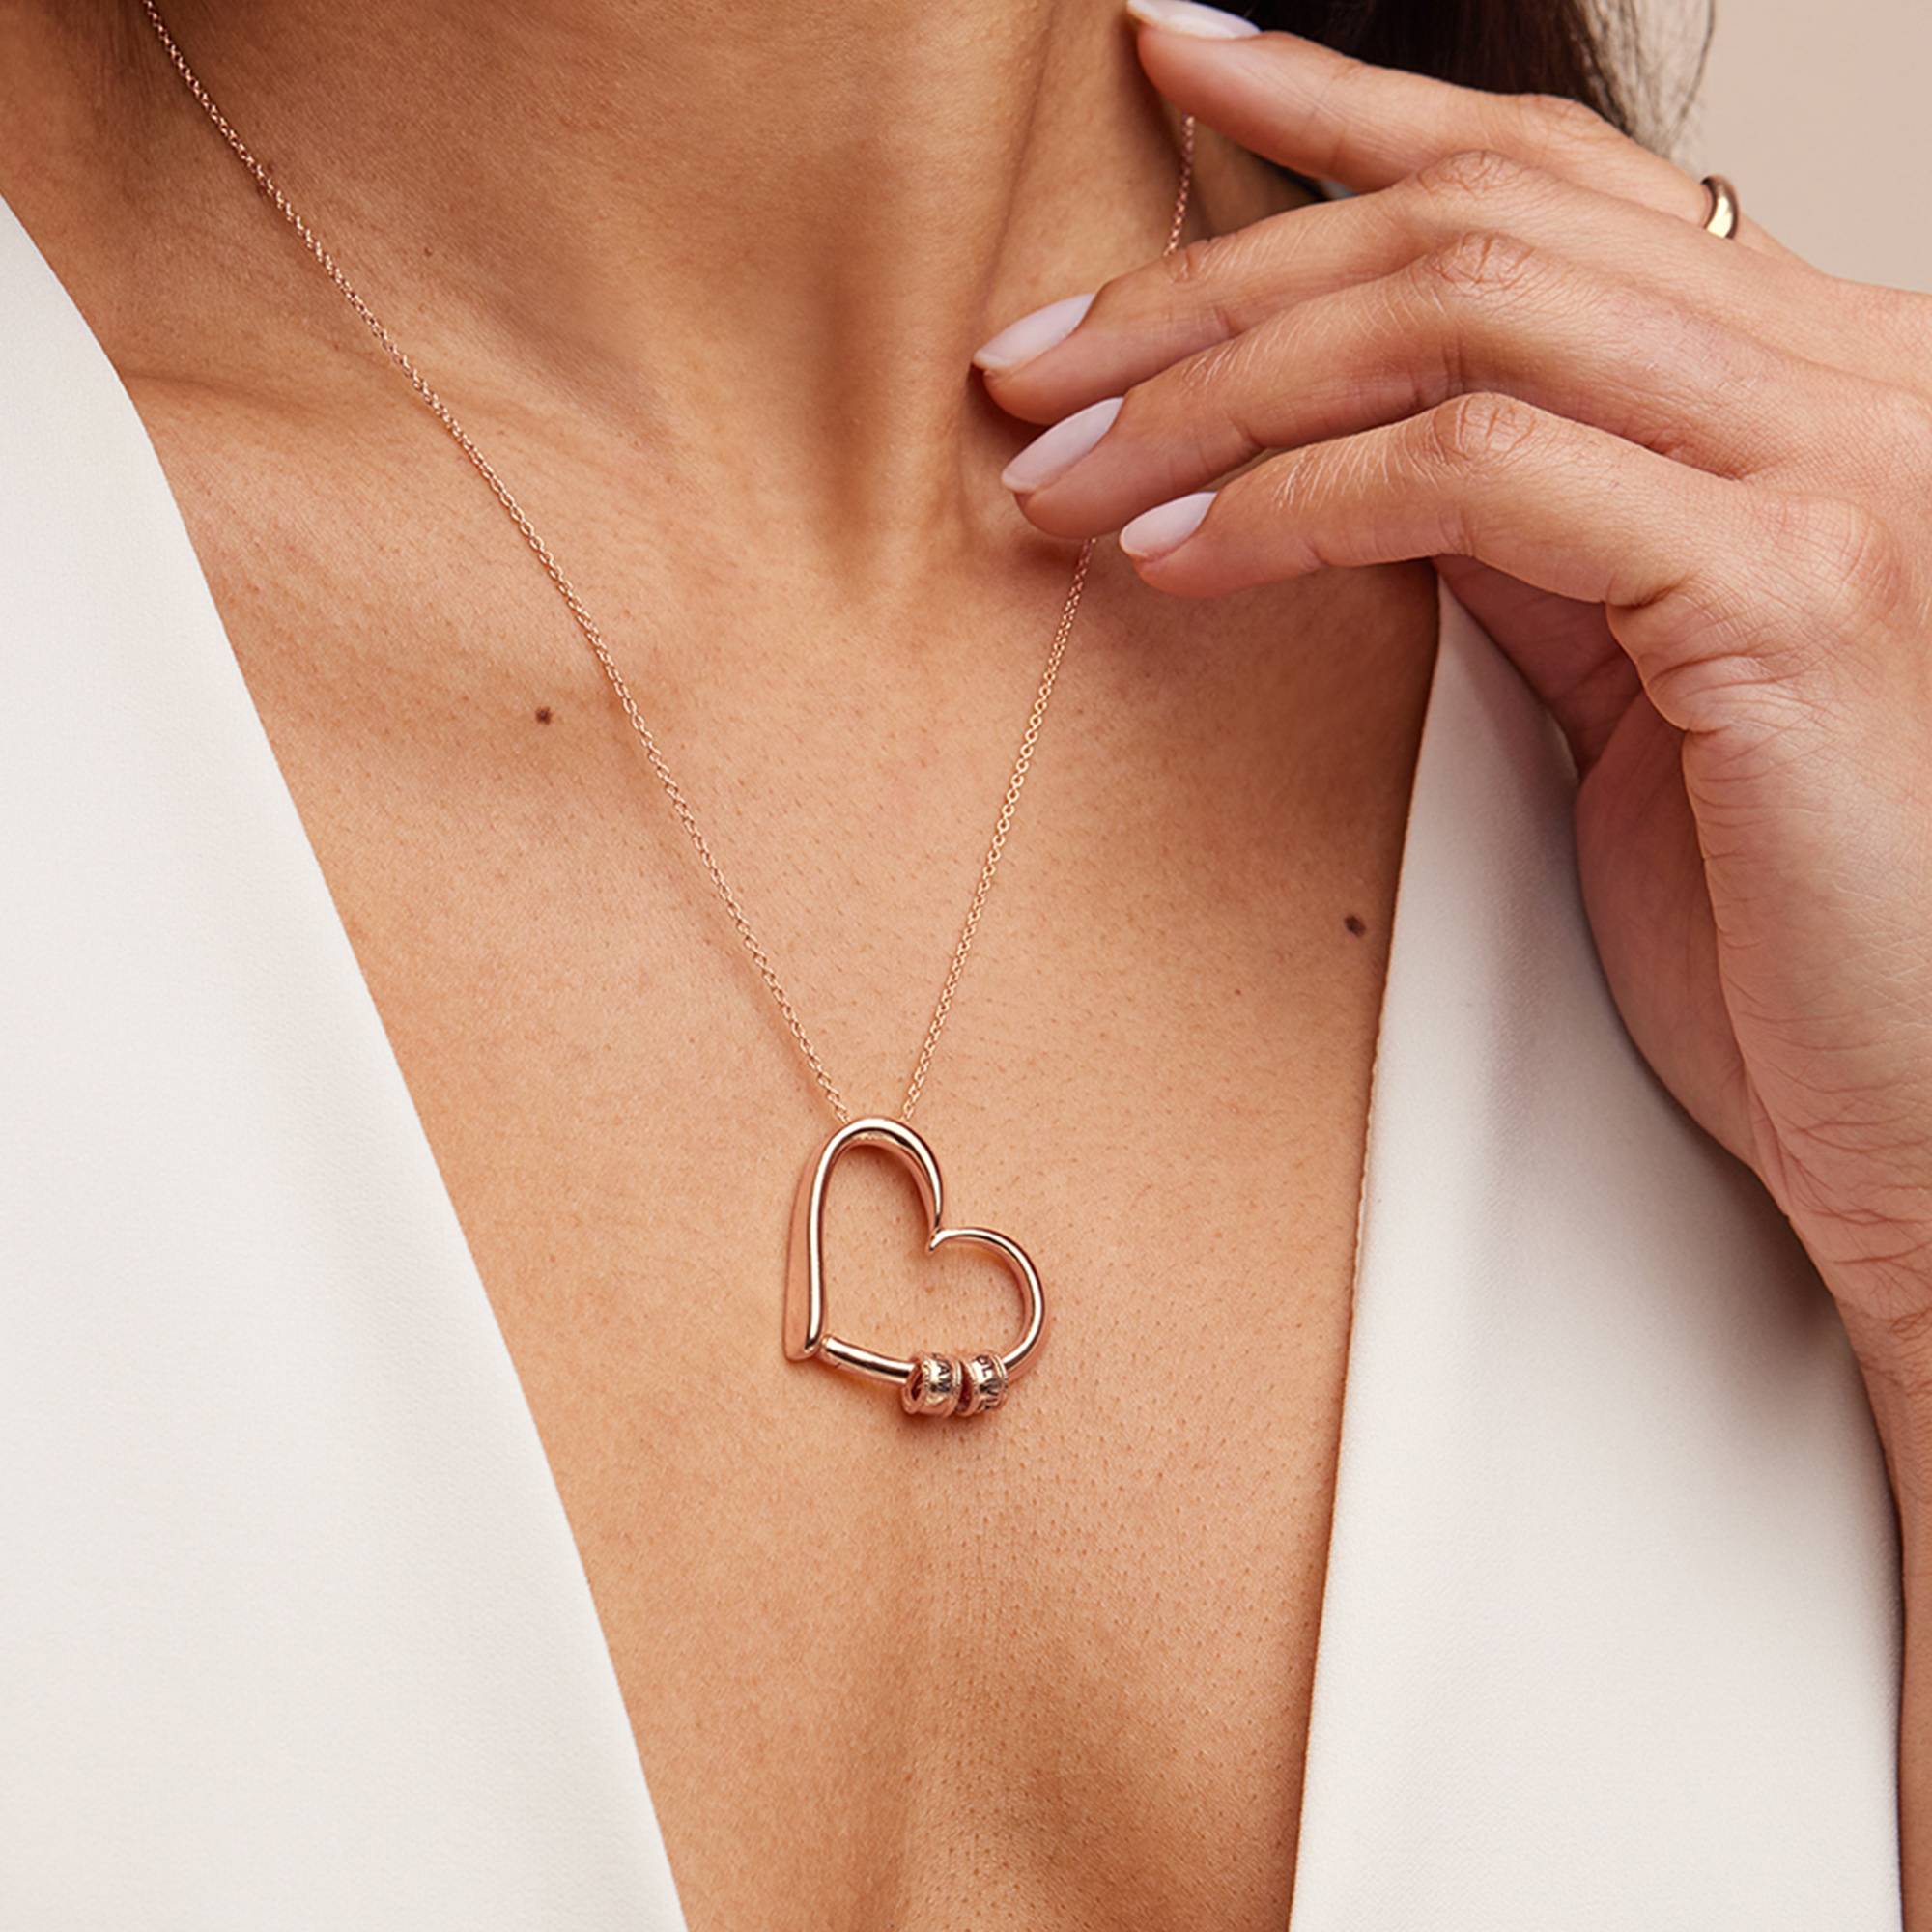 Charmante Herz-Halskette mit gravierten Beads - 750er Roségold-Vermeil-1 Produktfoto